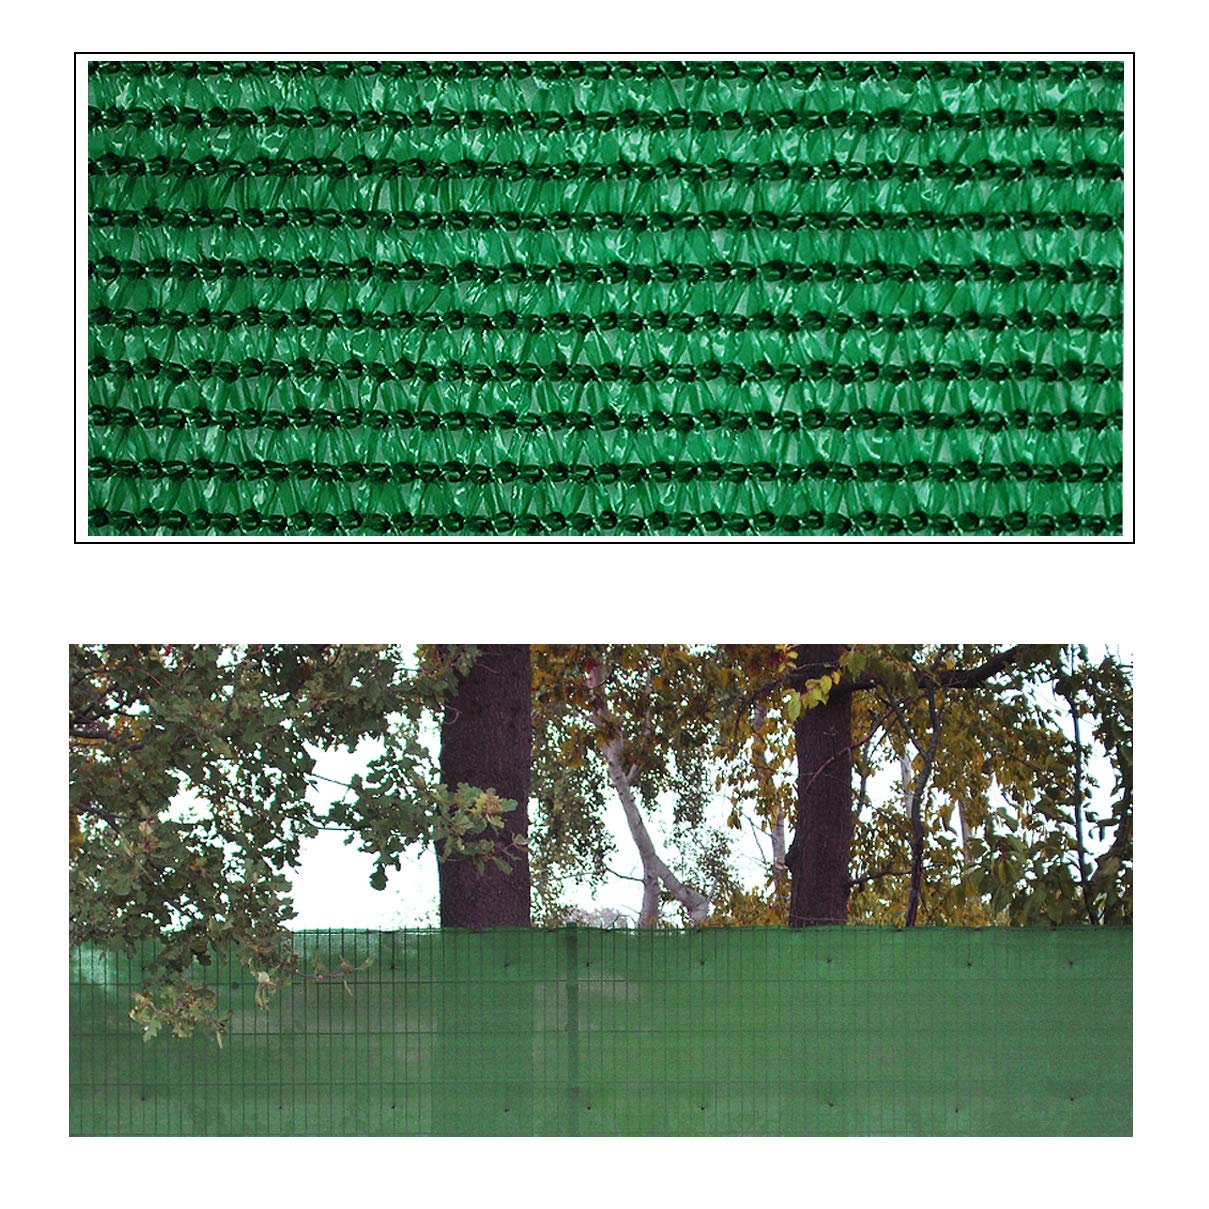 Helo 'P20' Sichtschutznetz Zaunblende 20 m Länge x 1,8 m Höhe (grün) aus HDPE Gewebe, hoch reißest, witterungs- und UV-beständig, ideal als Sichtschutz, Windschutz, Staubschutz oder Sonnenschutz